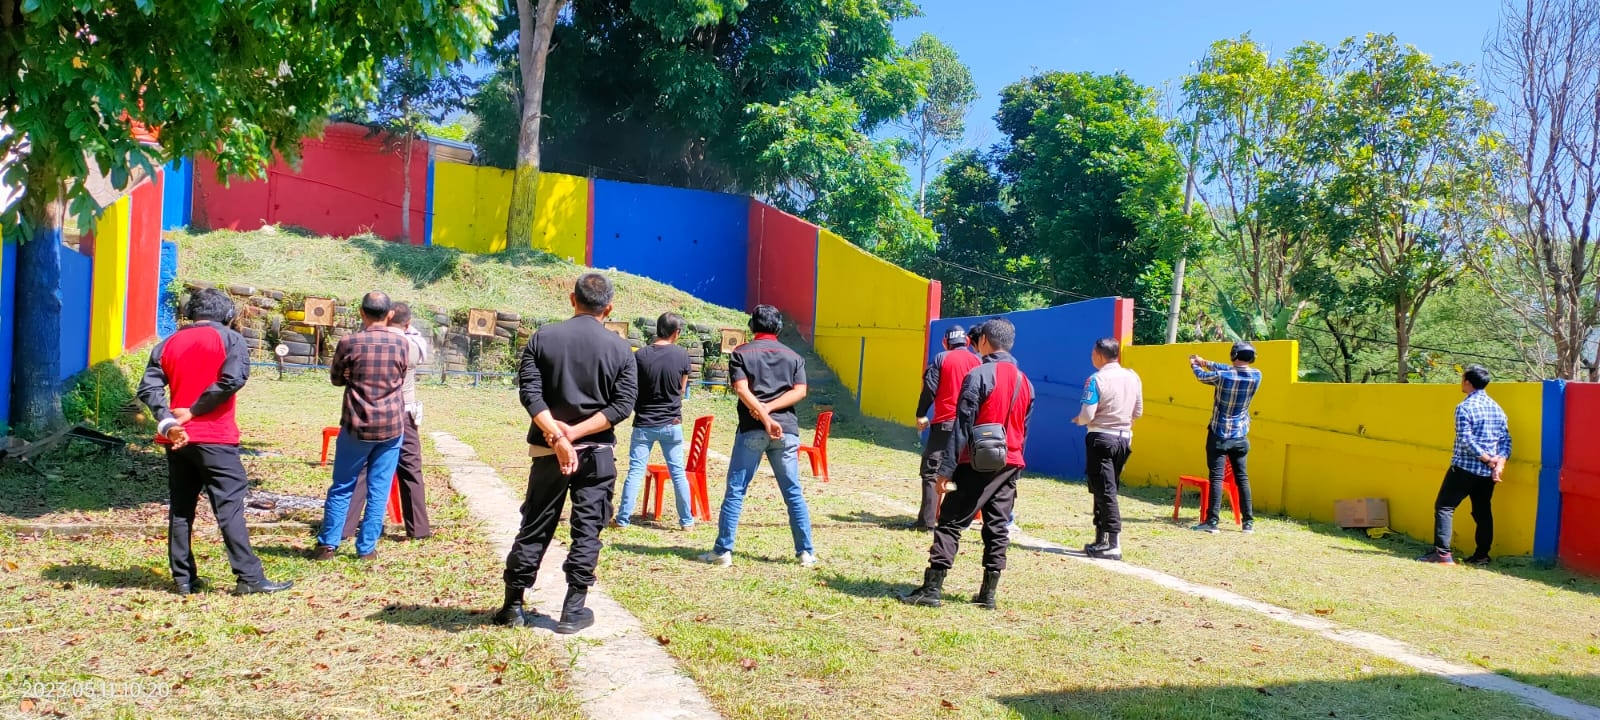 150 Personel Polres Pagaralam Ikuti Pelatihan Menembak, Ini Syarat Untuk Pegang Senpi